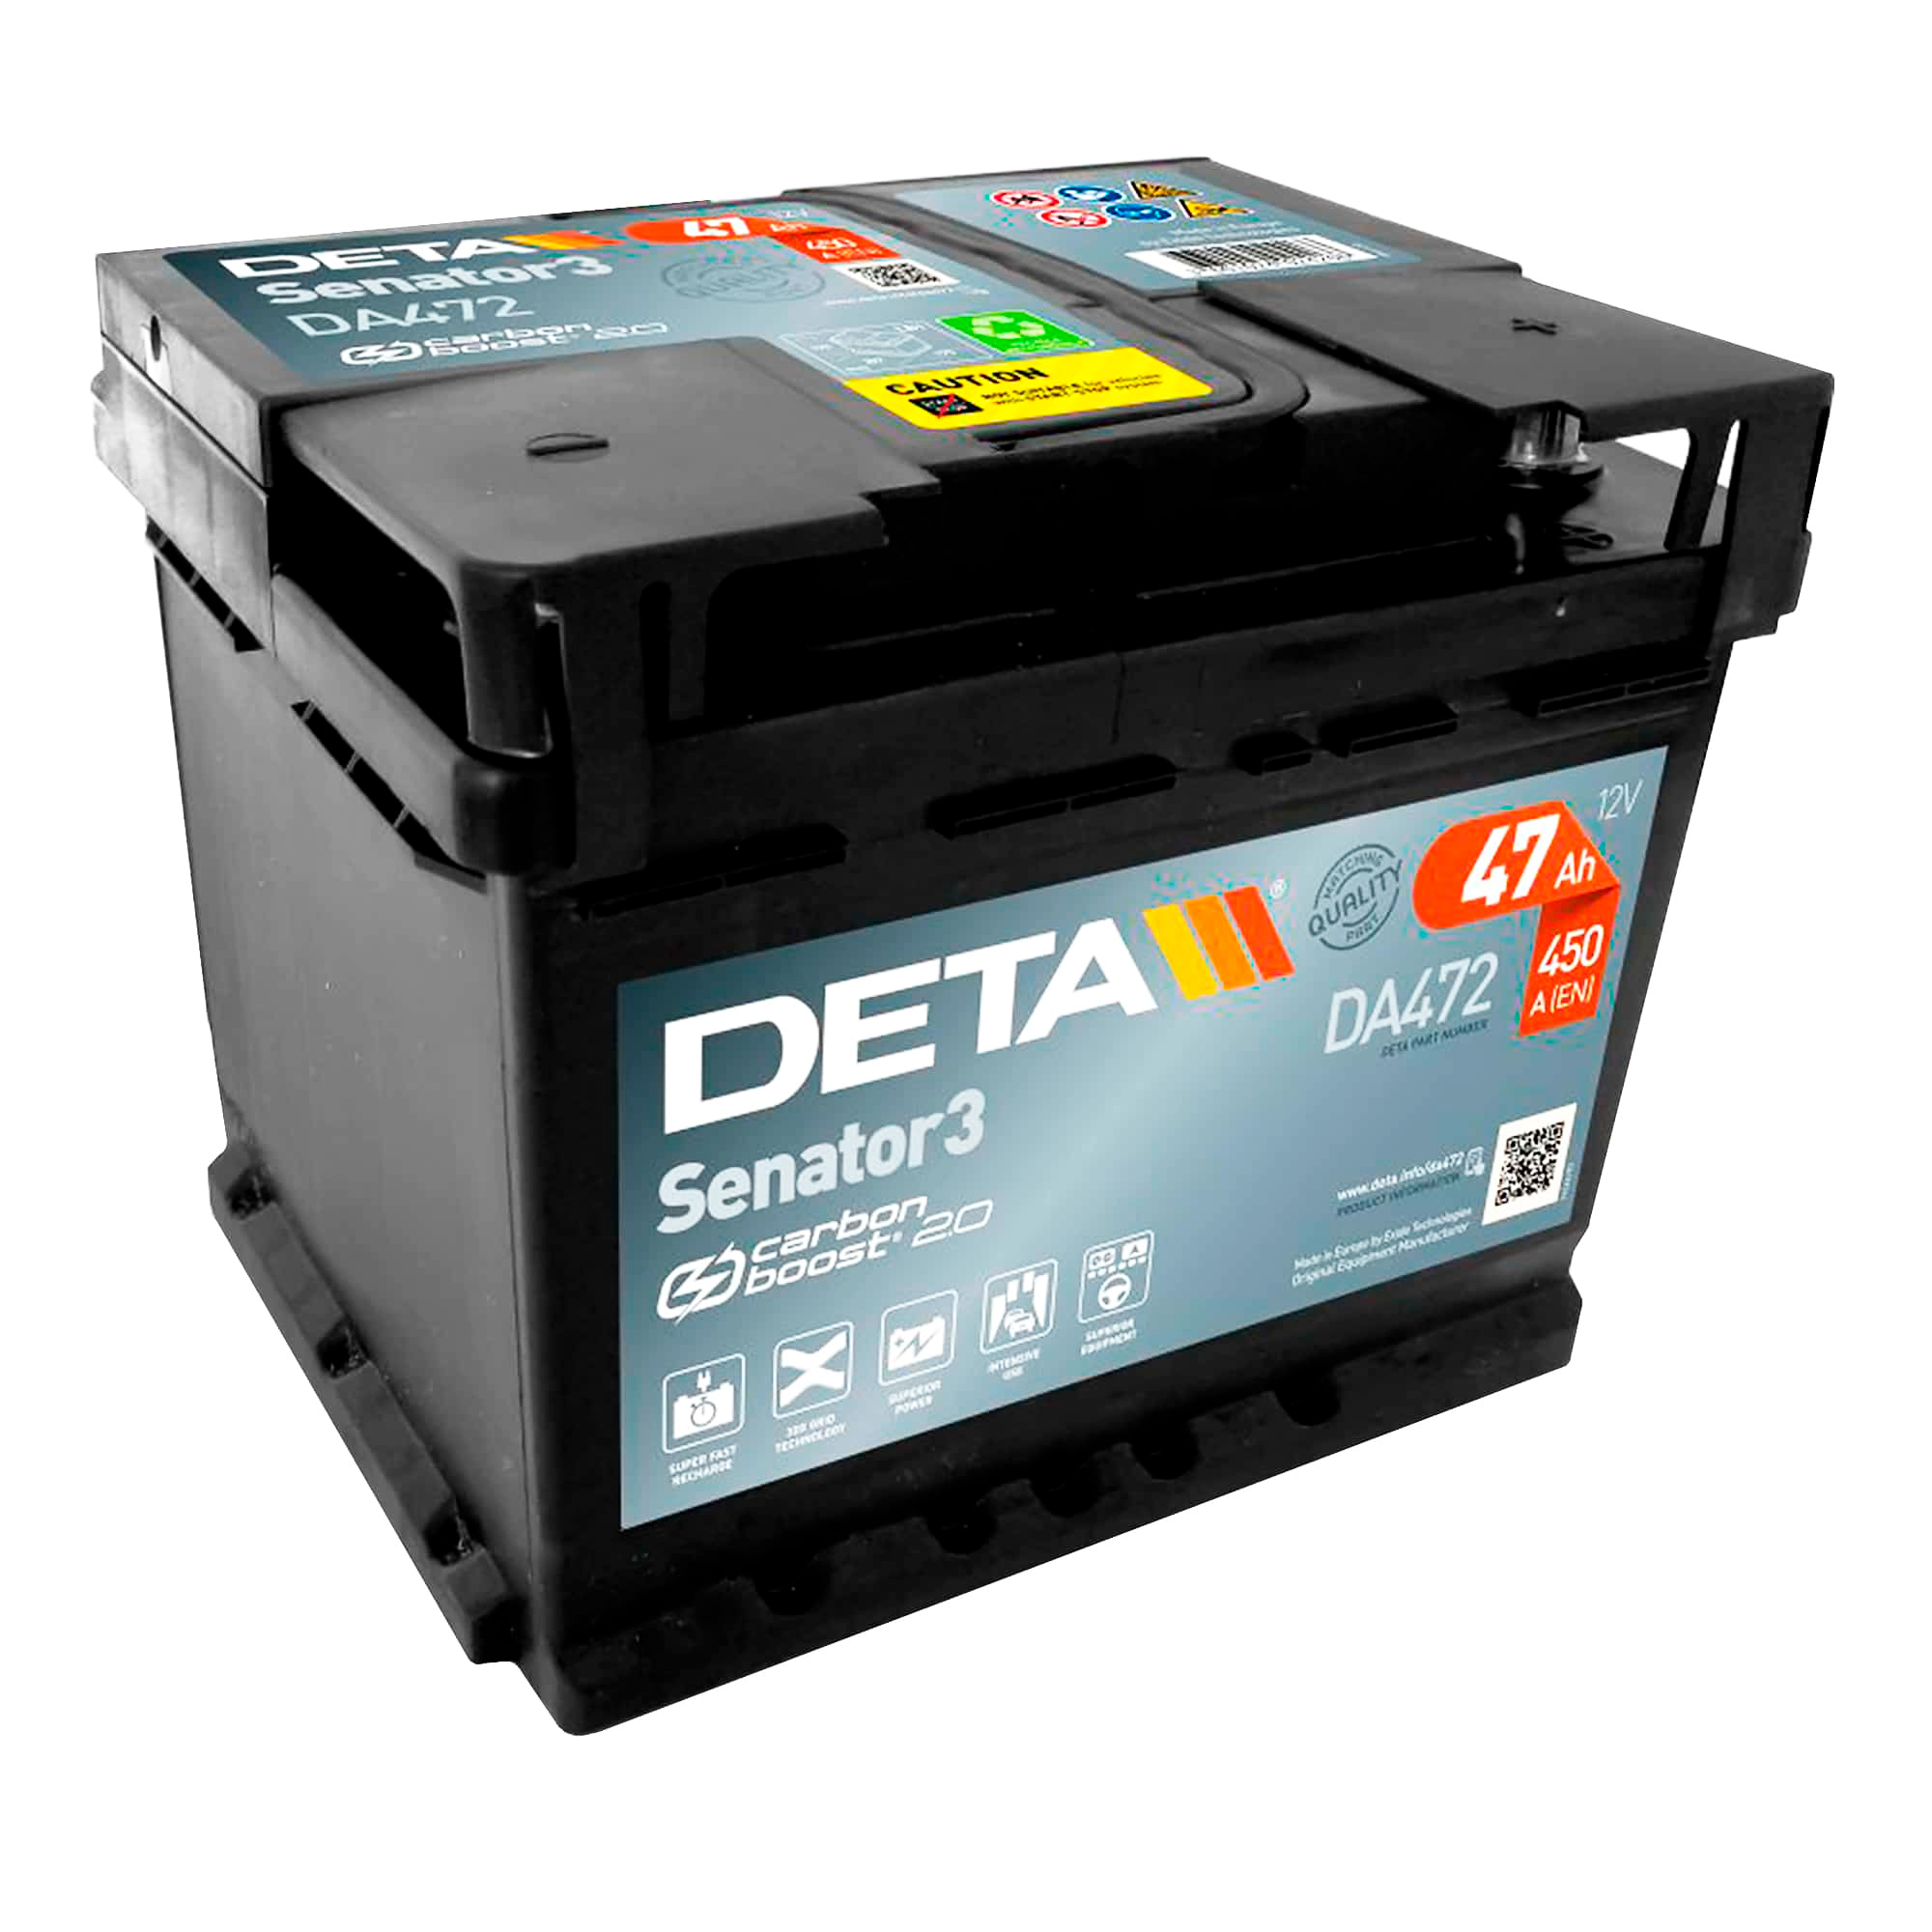 Автомобильный аккумулятор DETA 6CT-47Аh АзЕ Senator 3 (DA472)